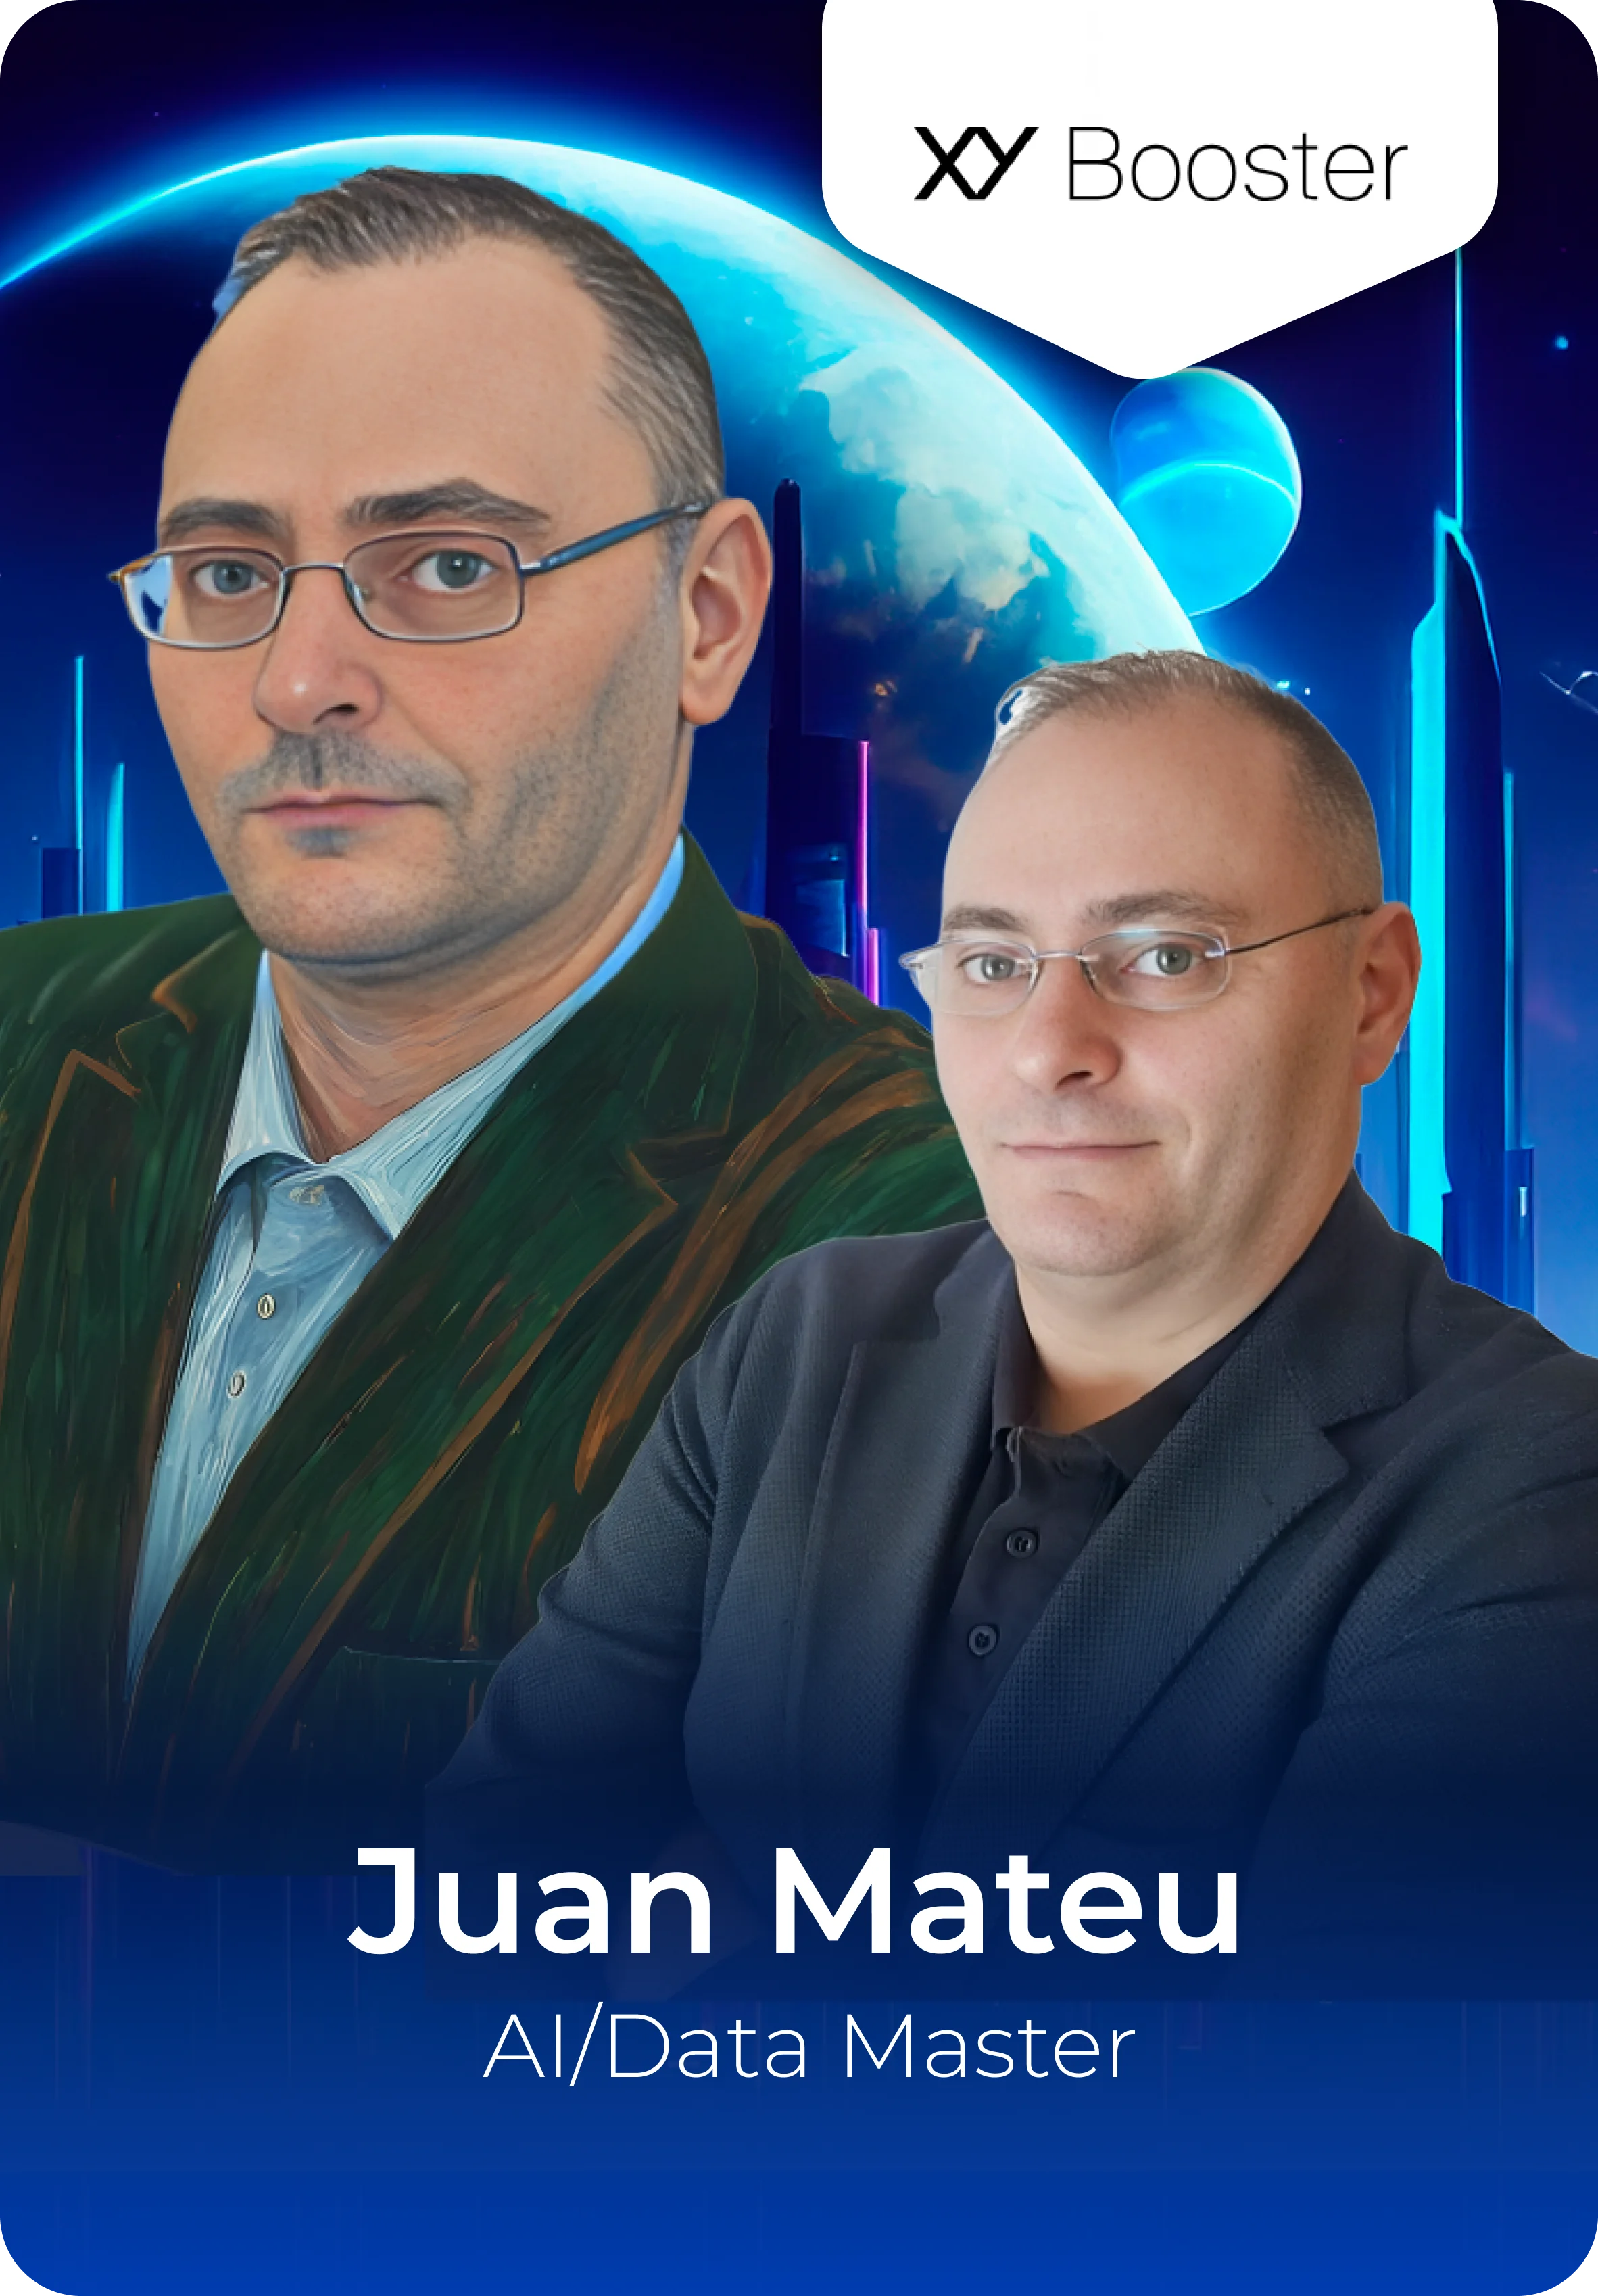 Juan Mateu